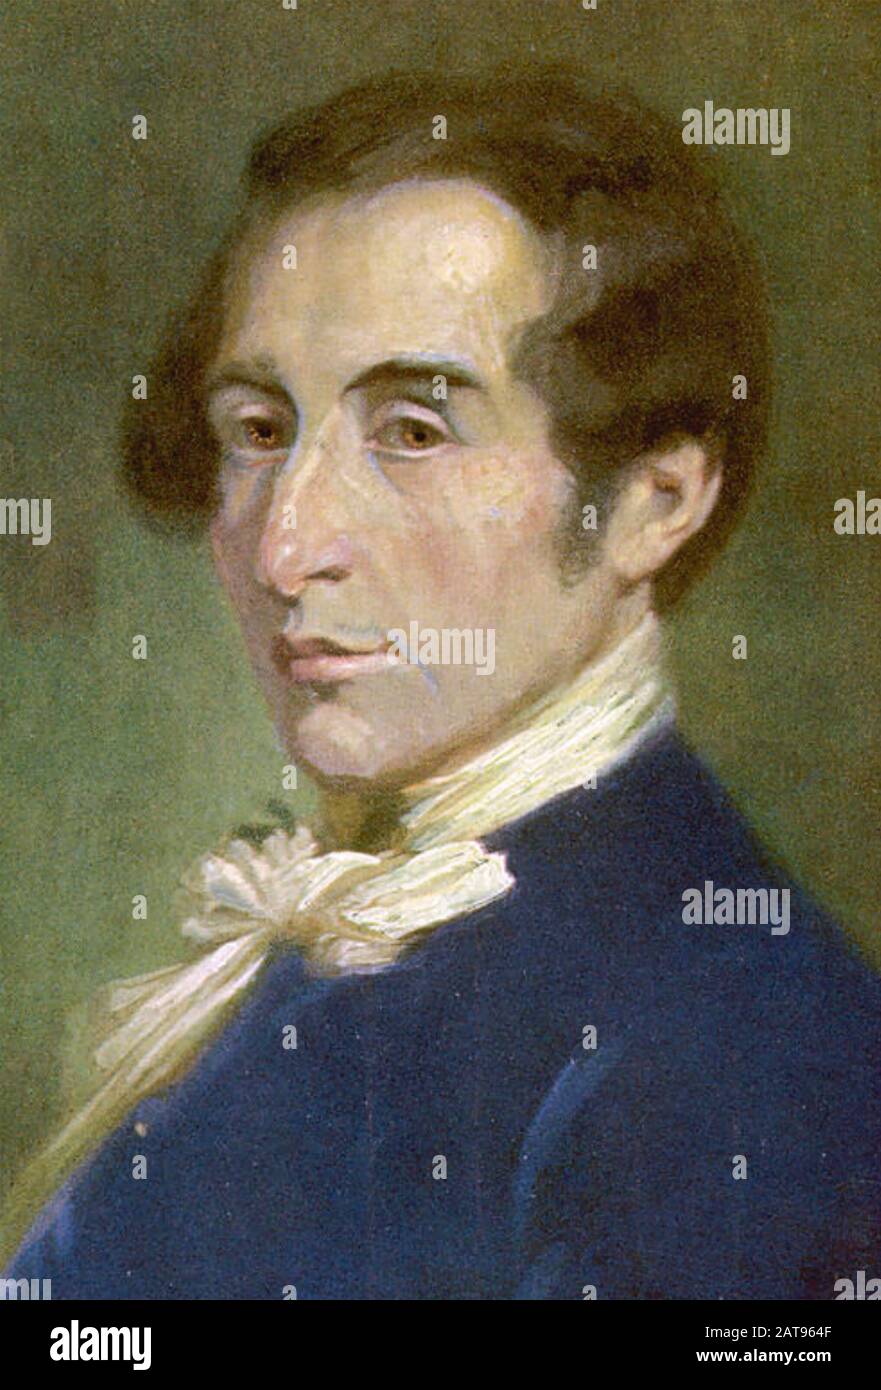 CARL MARIA von WEBER (1786-1826) German composer Stock Photo